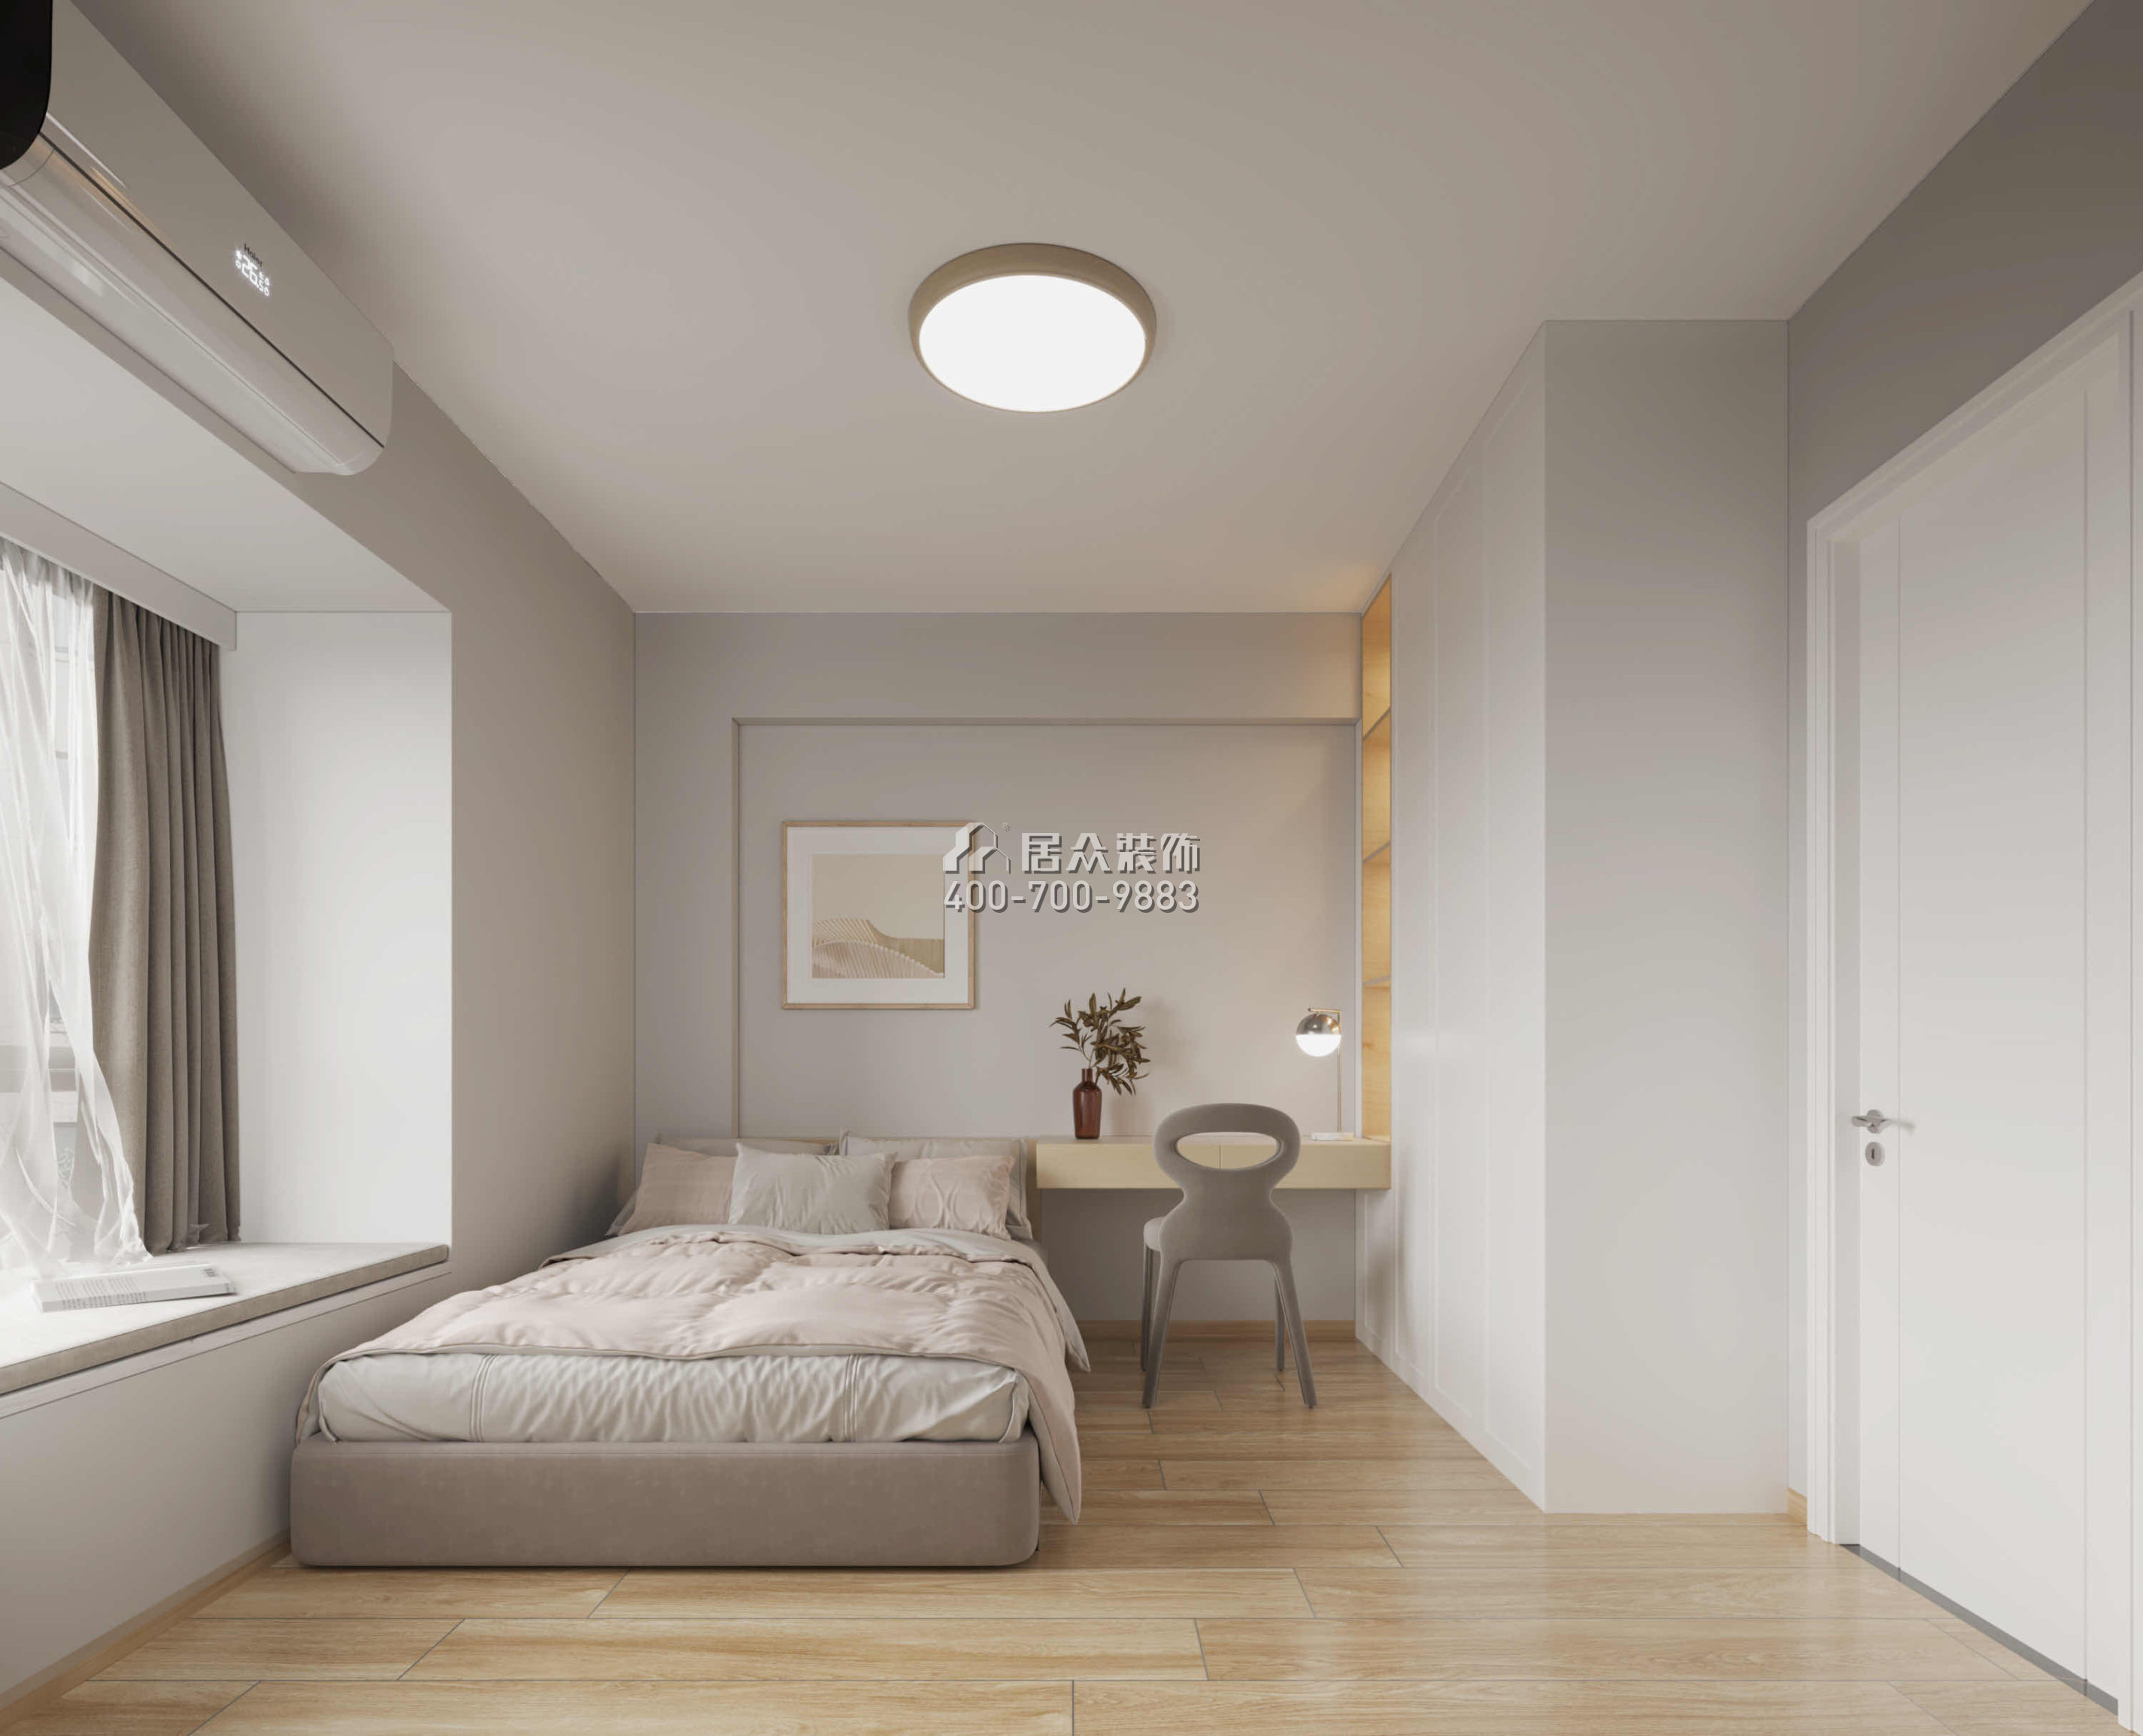 麗晶國際114平方米現代簡約風格平層戶型臥室裝修效果圖